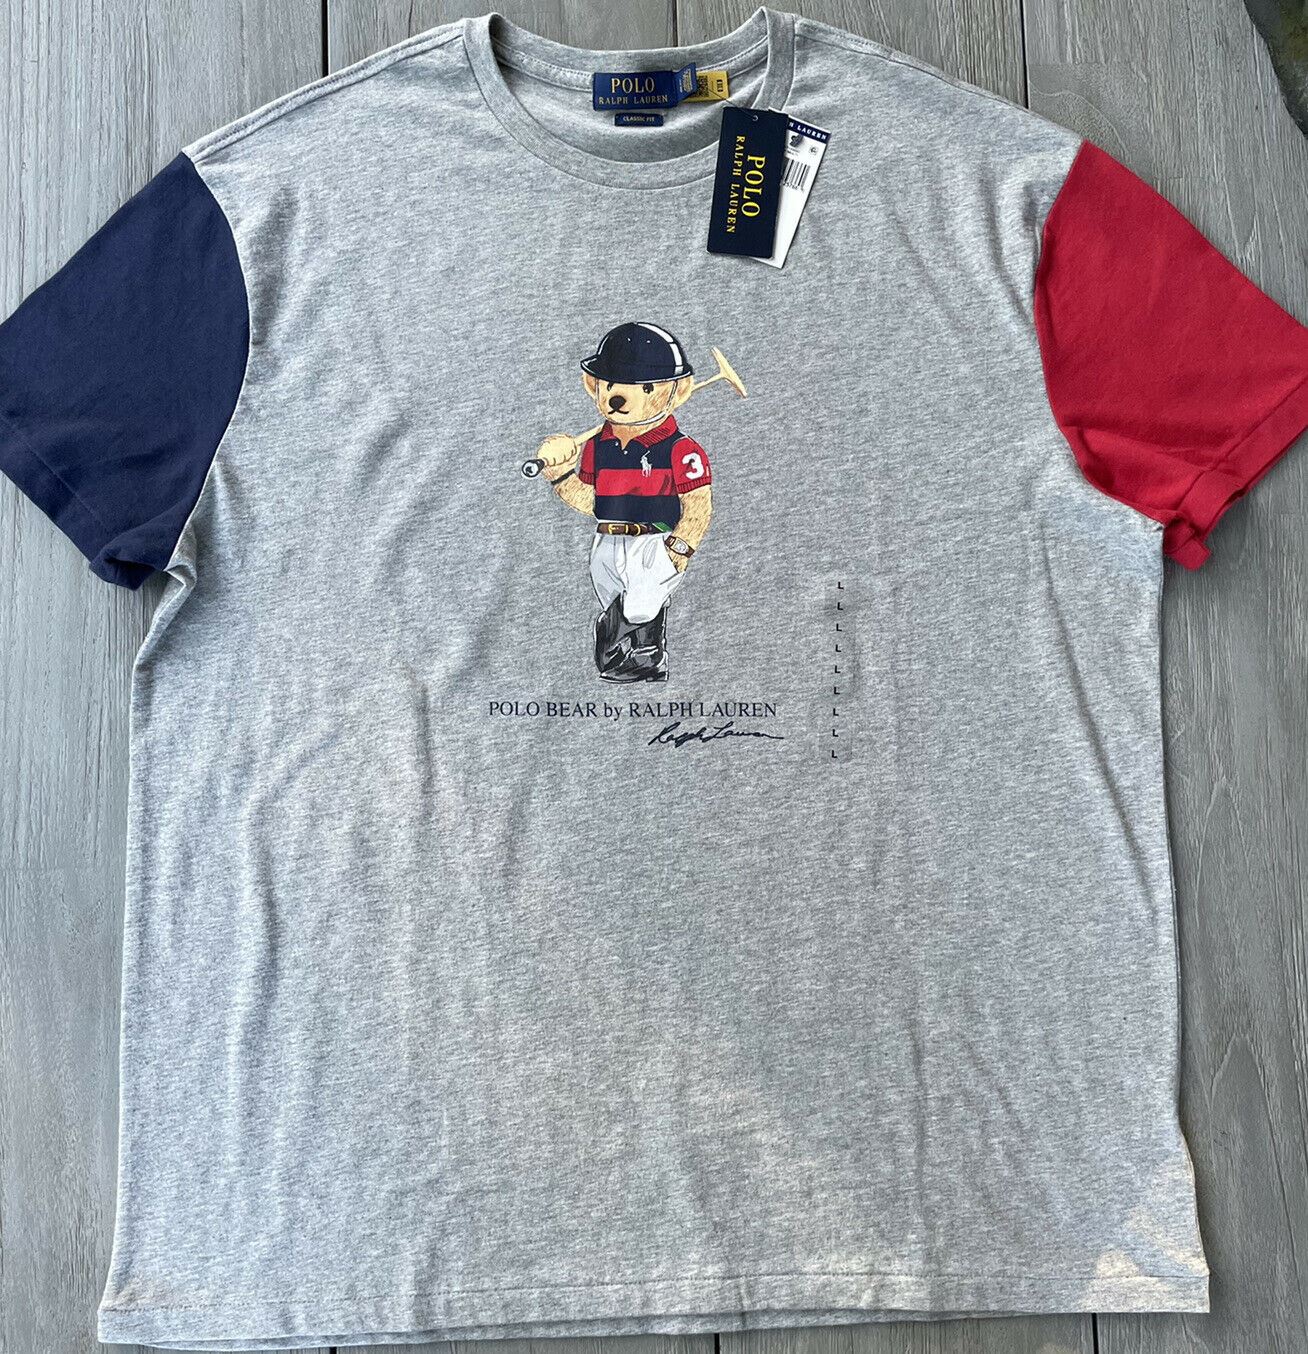 Neu mit Etikett: Polo Ralph Lauren Preppy Bear Classic Fit Dreifarbiges T-Shirt für Herren, Grau, XL